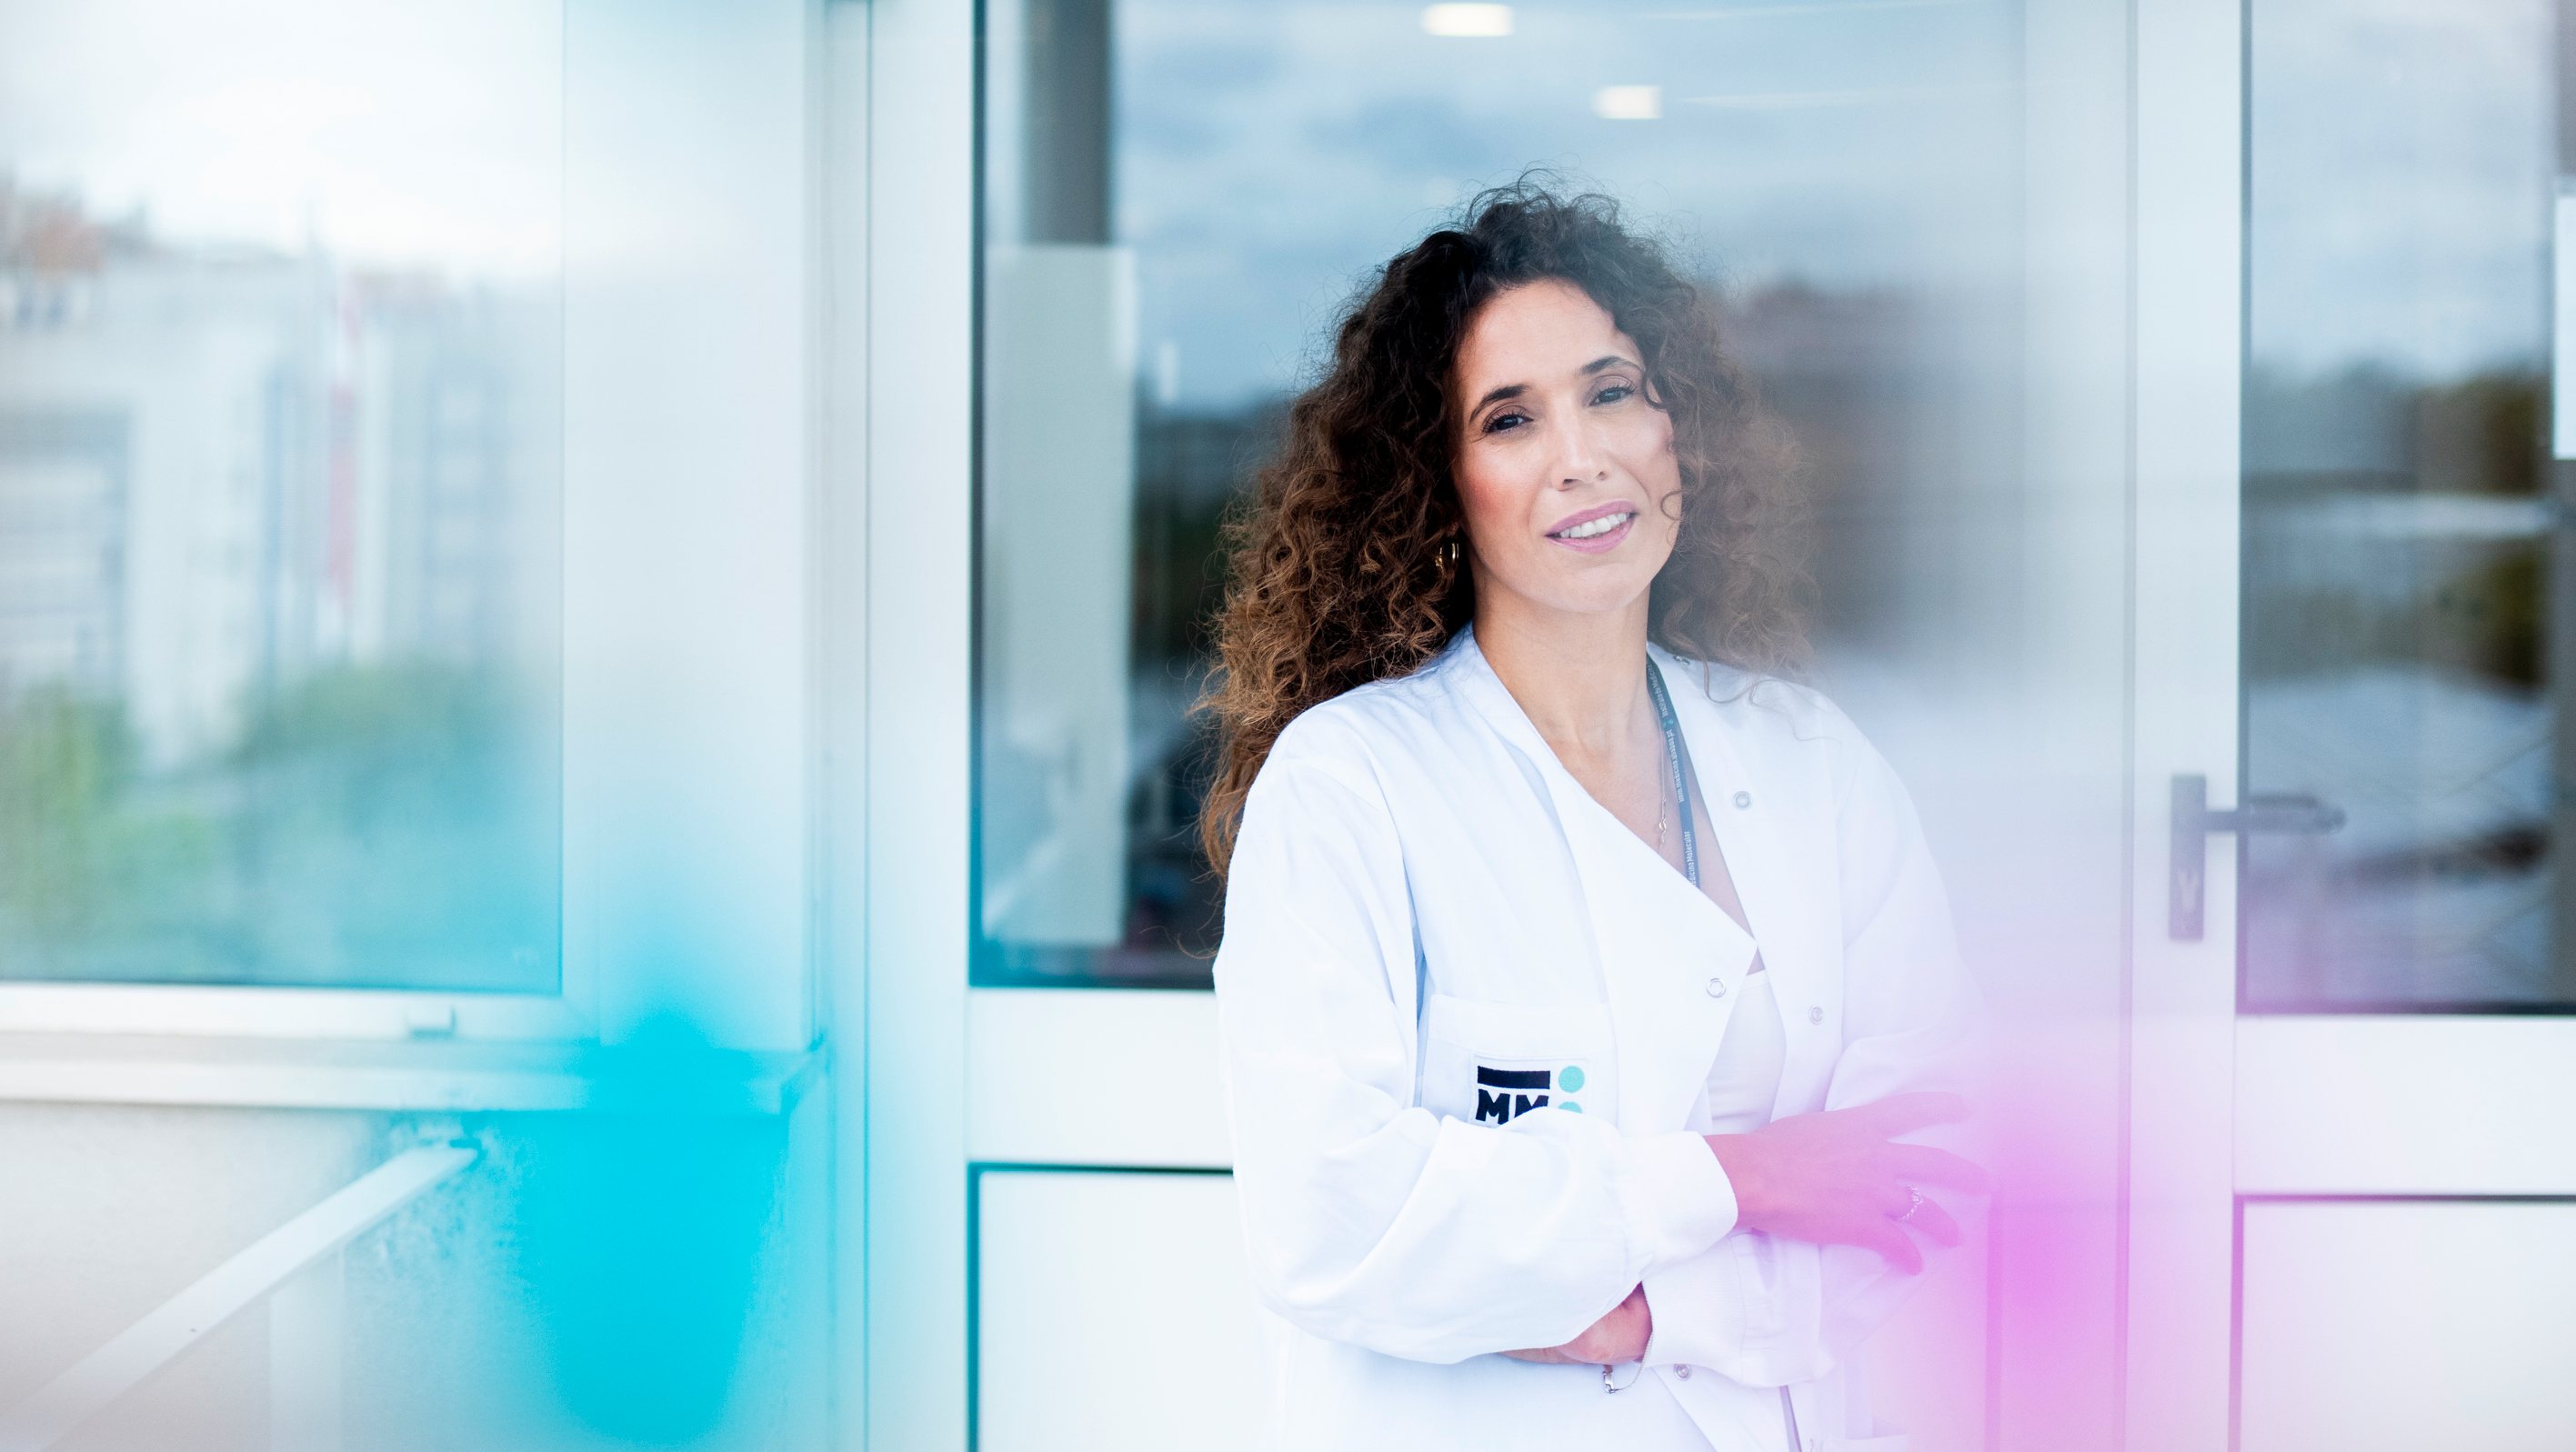 Licenciada em Bioquímica pela Universidade de Évora, Diana Matias, concluiu o mestrado em Coimbra, fez o doutoramento no Brasil e desenvolveu investigação na University College London